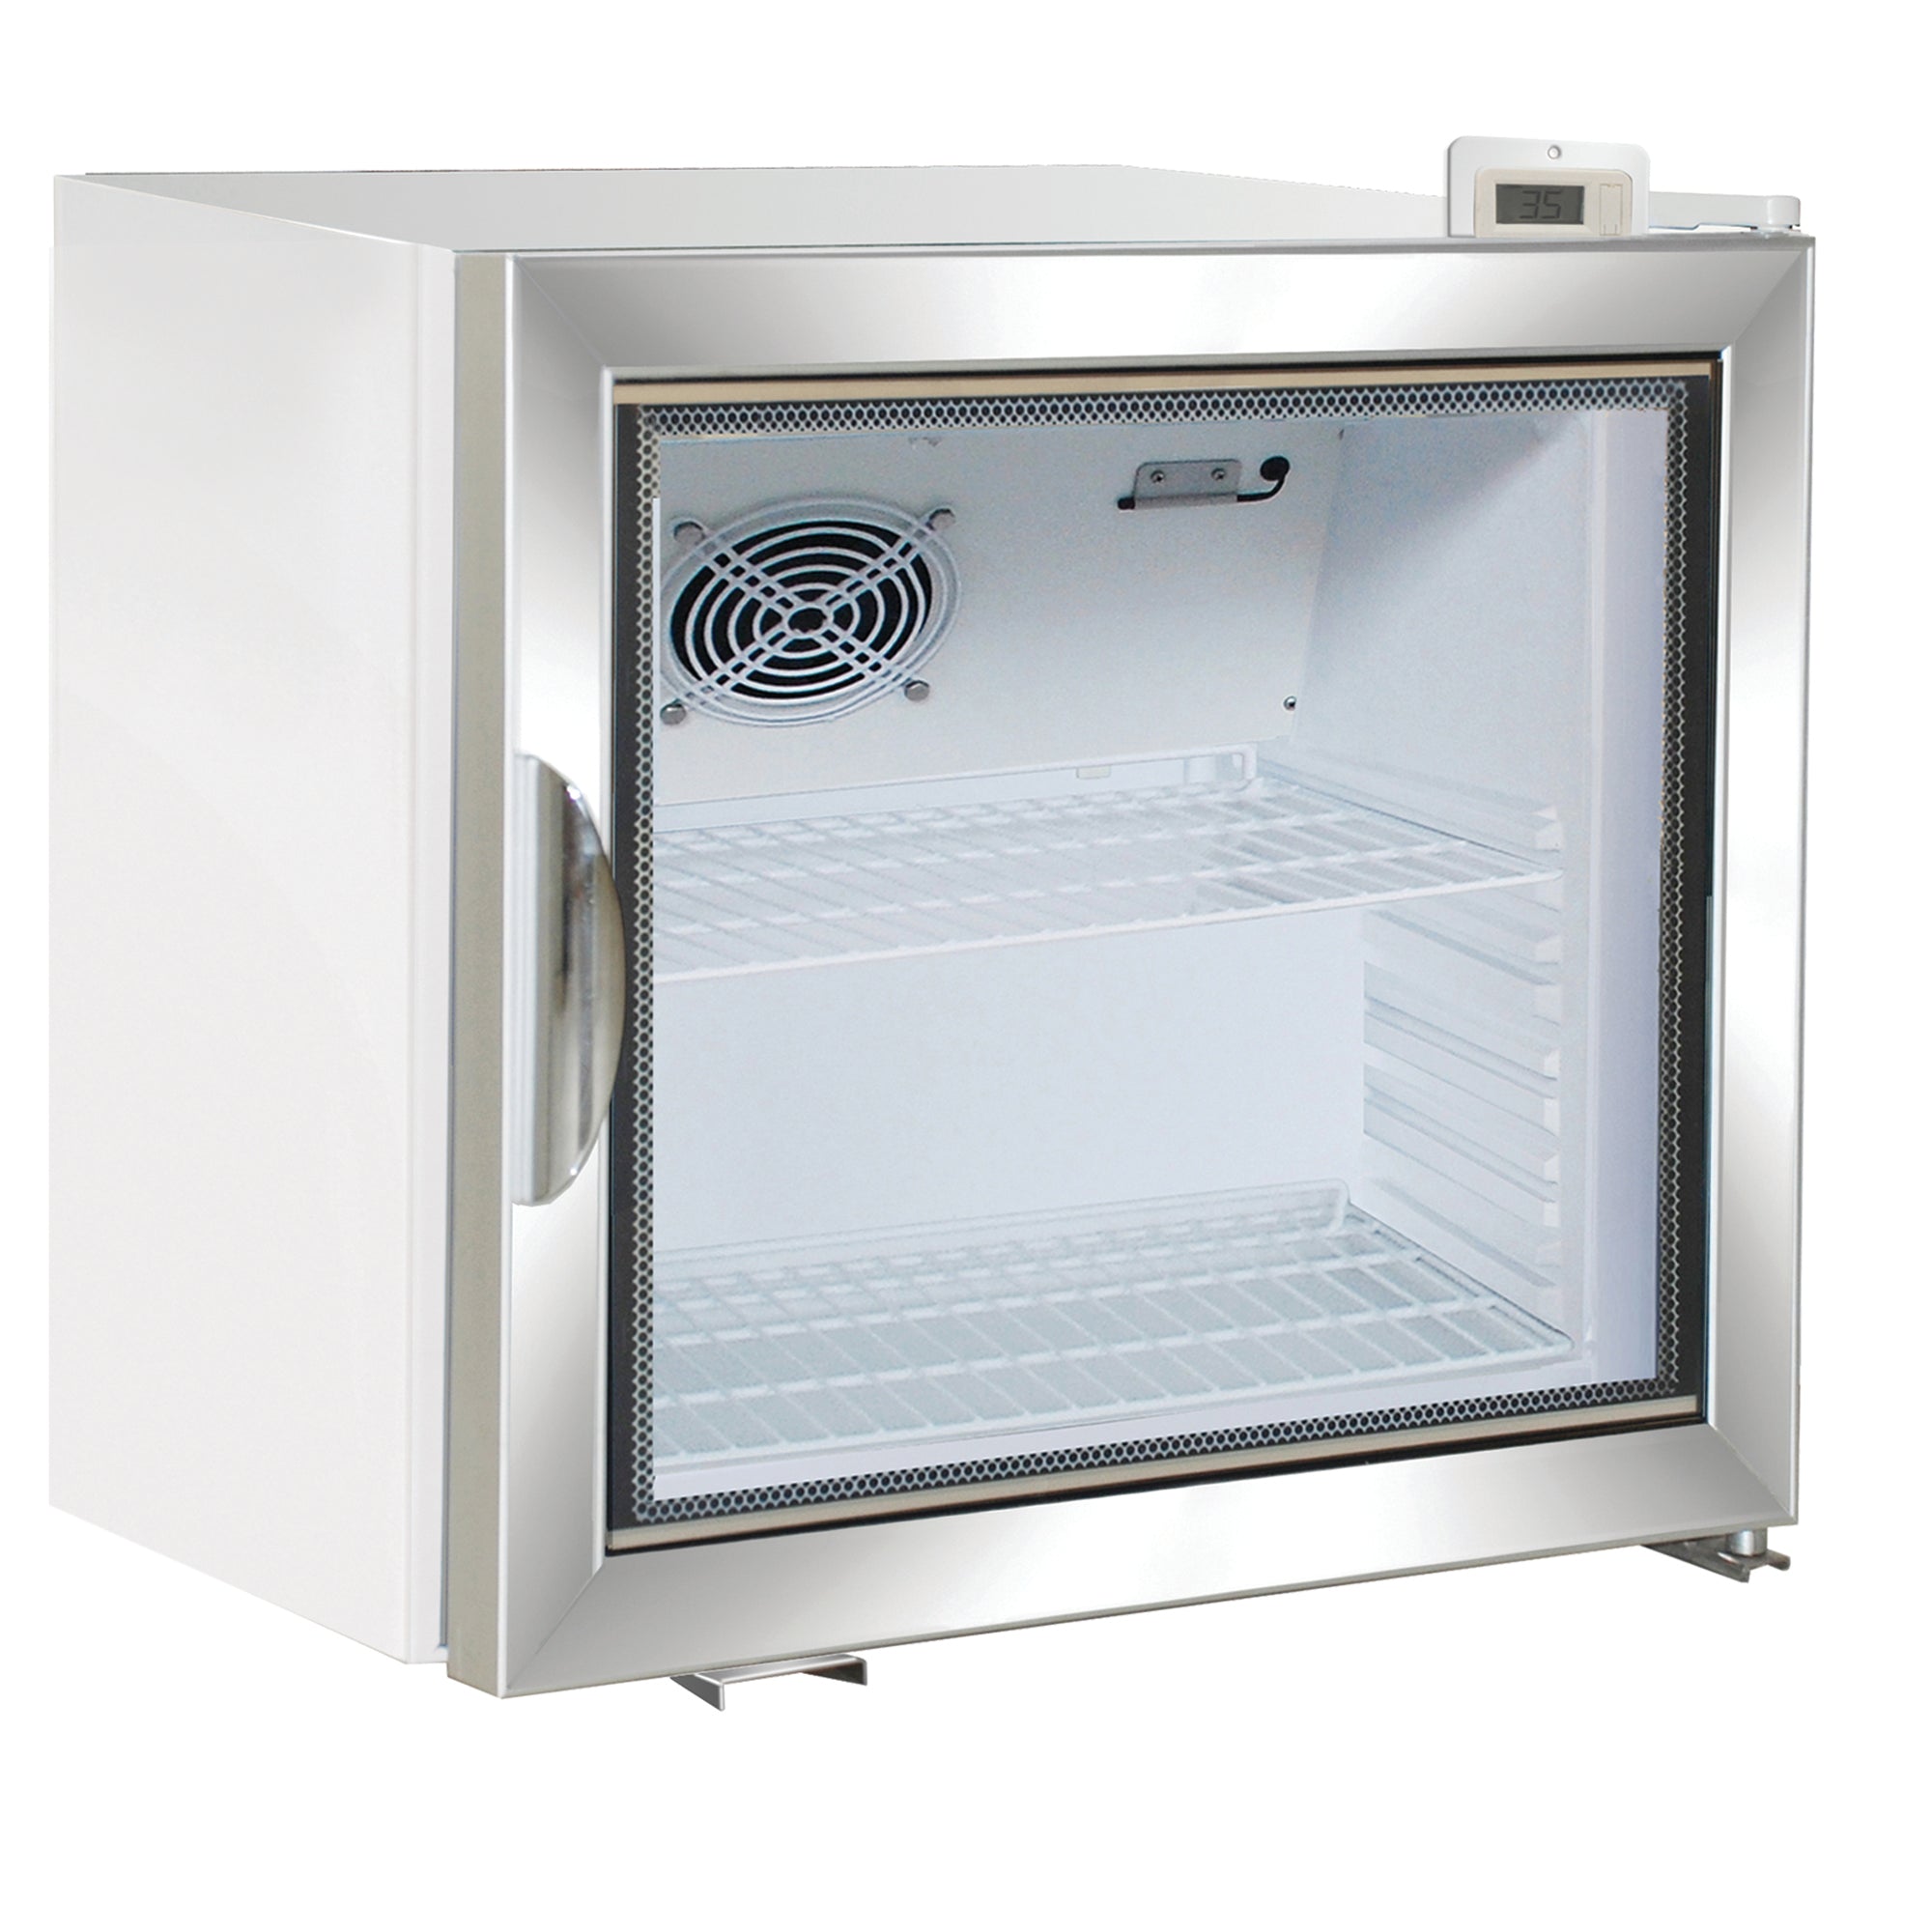 Maxx Cold Single Glass Door Merchandiser Freezer, Free Standing